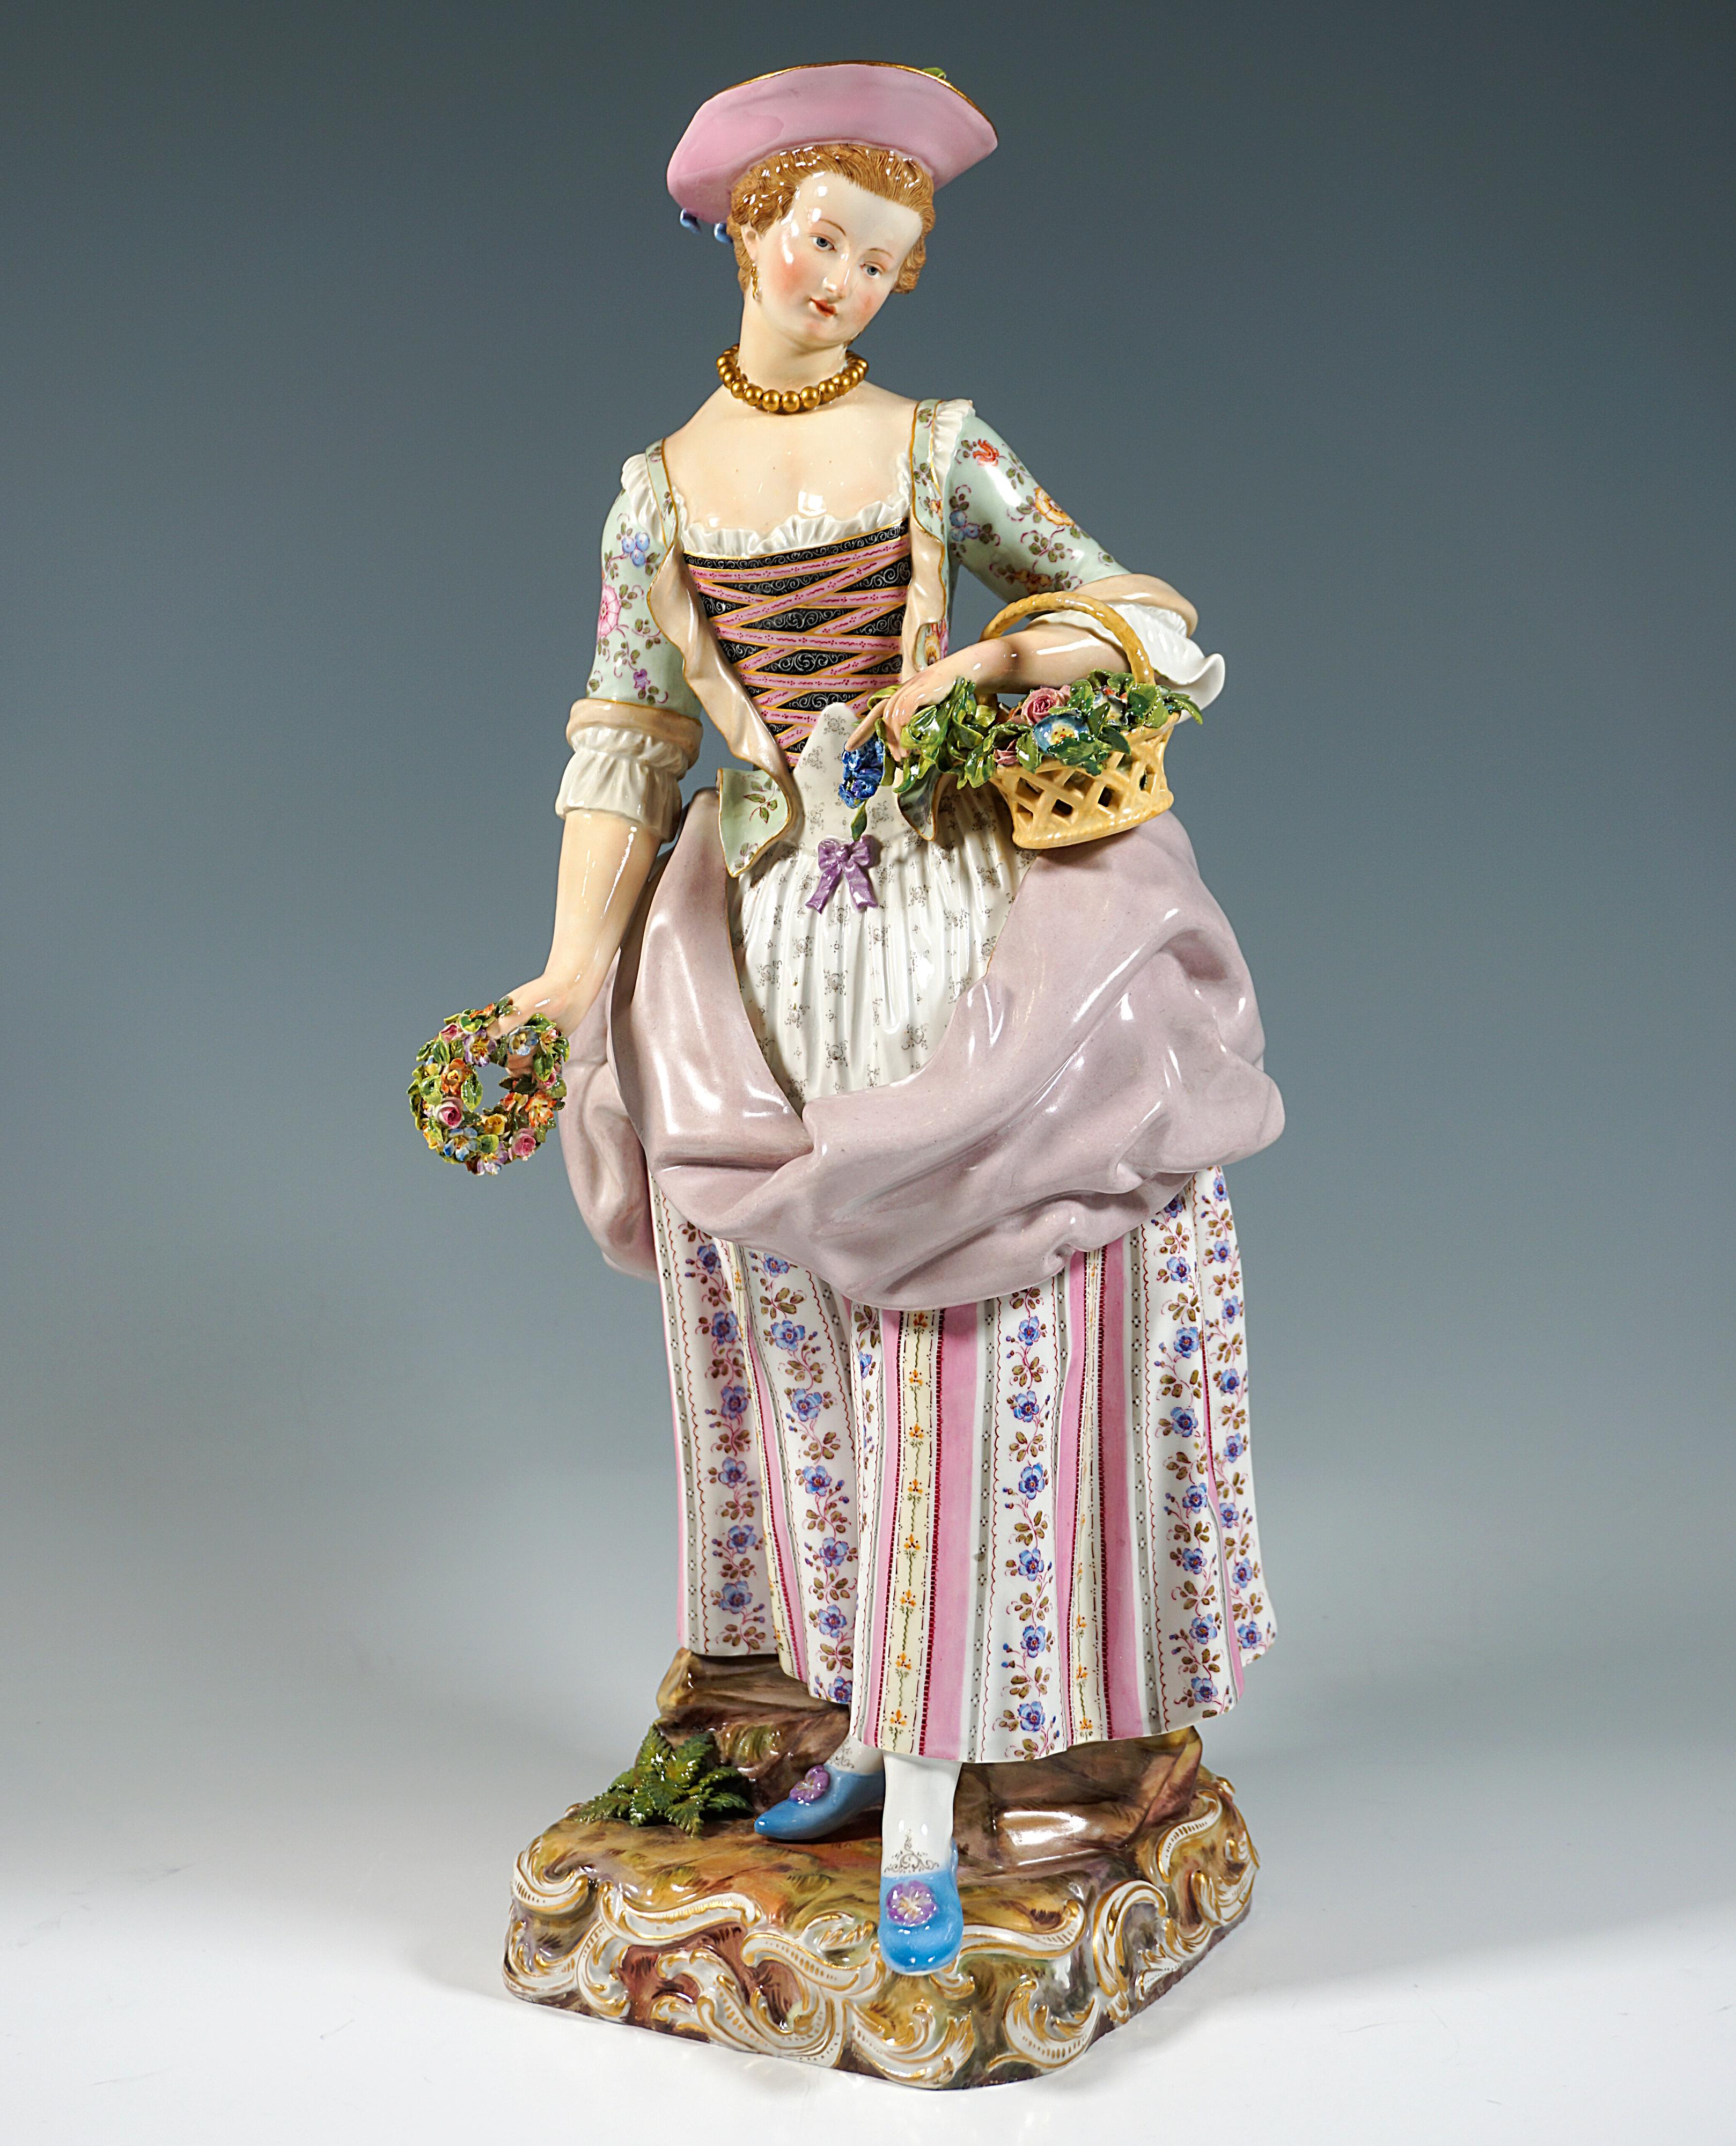 Gärtnerpaar, bestehend aus zwei Einzelfiguren.
Die Gärtnerin trägt ländliche Rokoko-Kleidung: ein Kleid mit aufwändigem Blumenschmuck und hochgesteckter Schürze, Korsett und Borten, einen Hut mit Krempe und Blumenschmuck, am linken Arm einen Korb